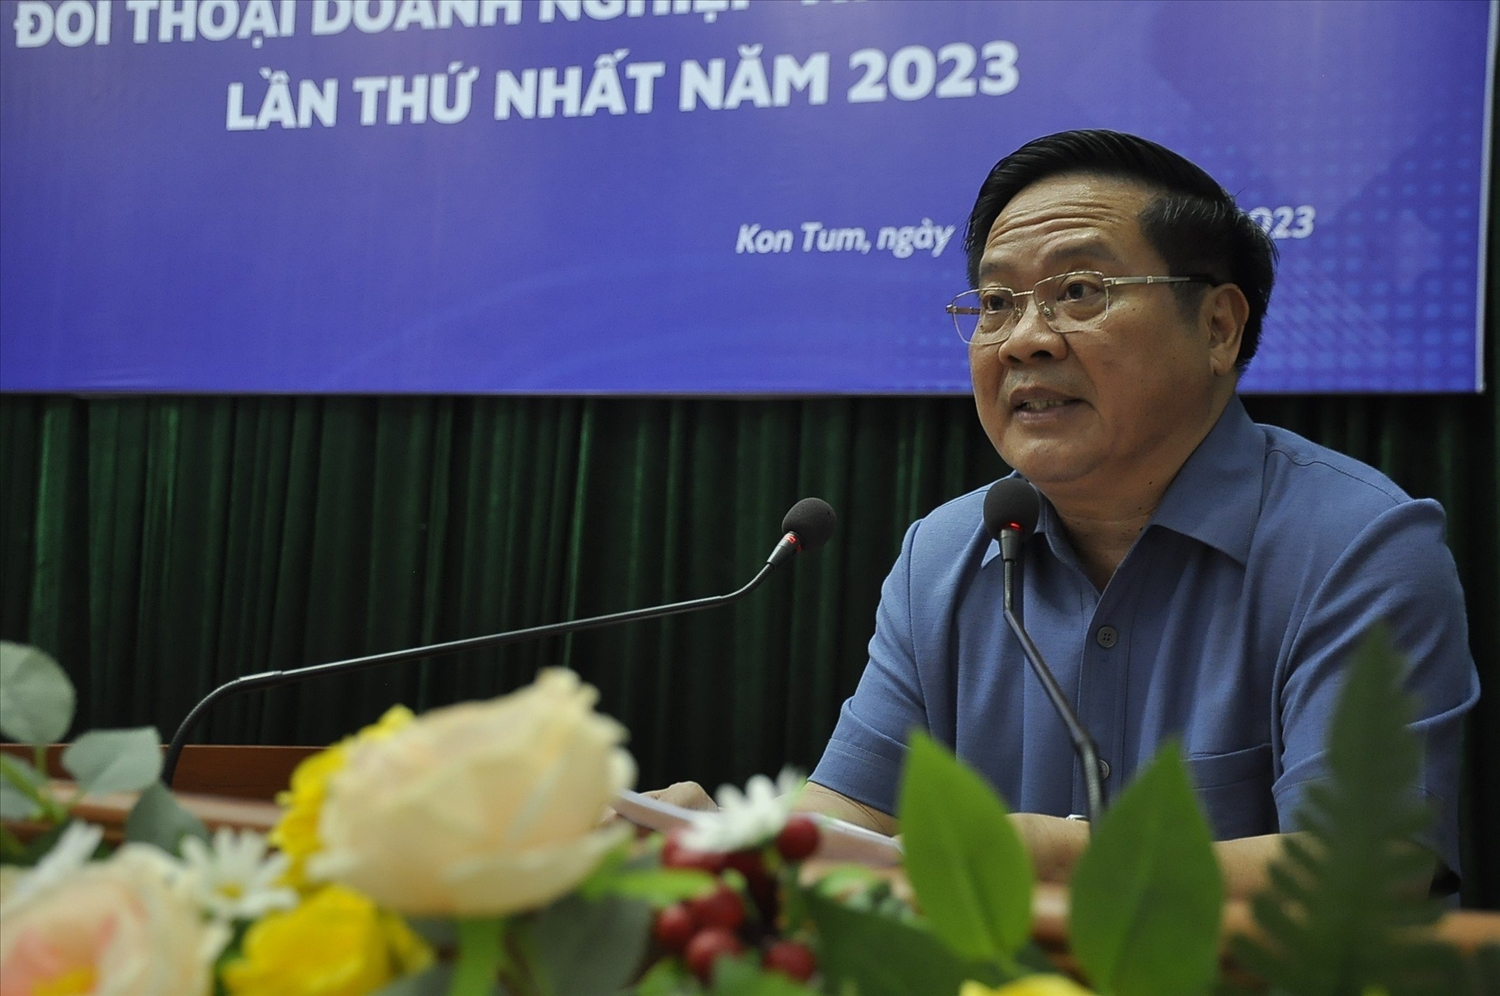 Ông Lê Ngọc Tuấn – Chủ tịch UBND tỉnh Kon Tum trao đổi, trả lời những kiến nghị của các doanh nghiệp tại buổi đối thoại 